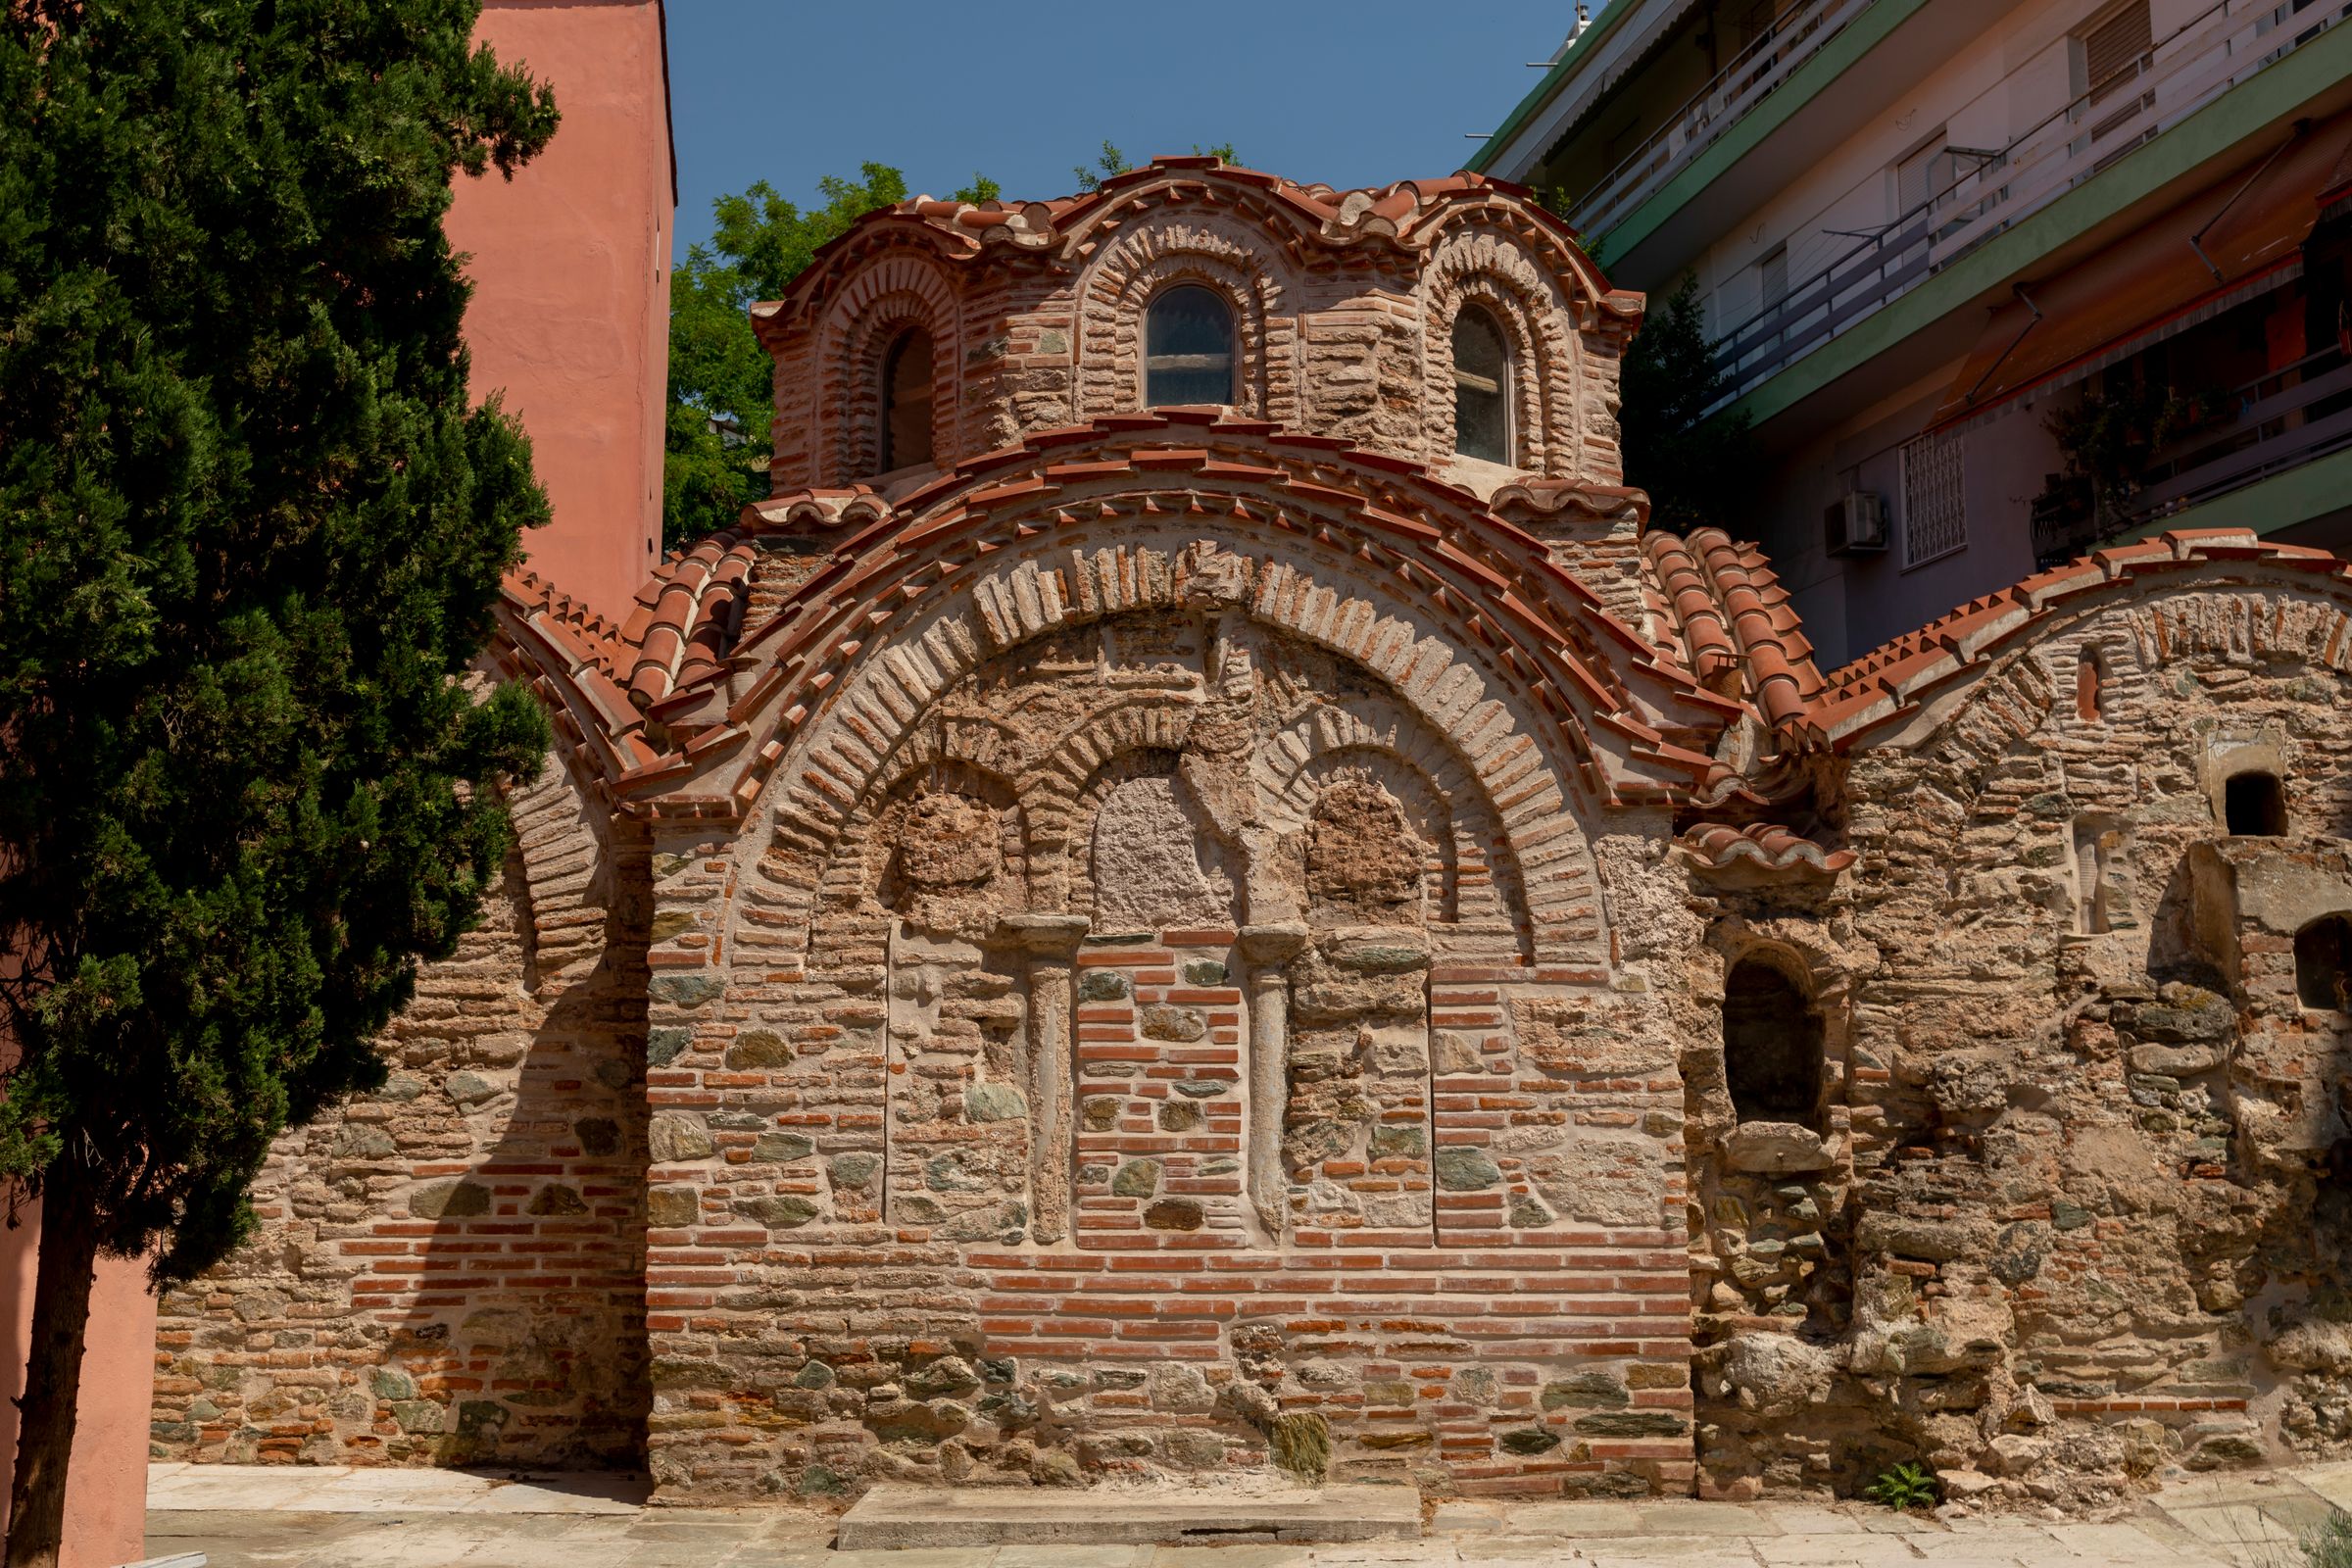 Church of Agia Aikaterini